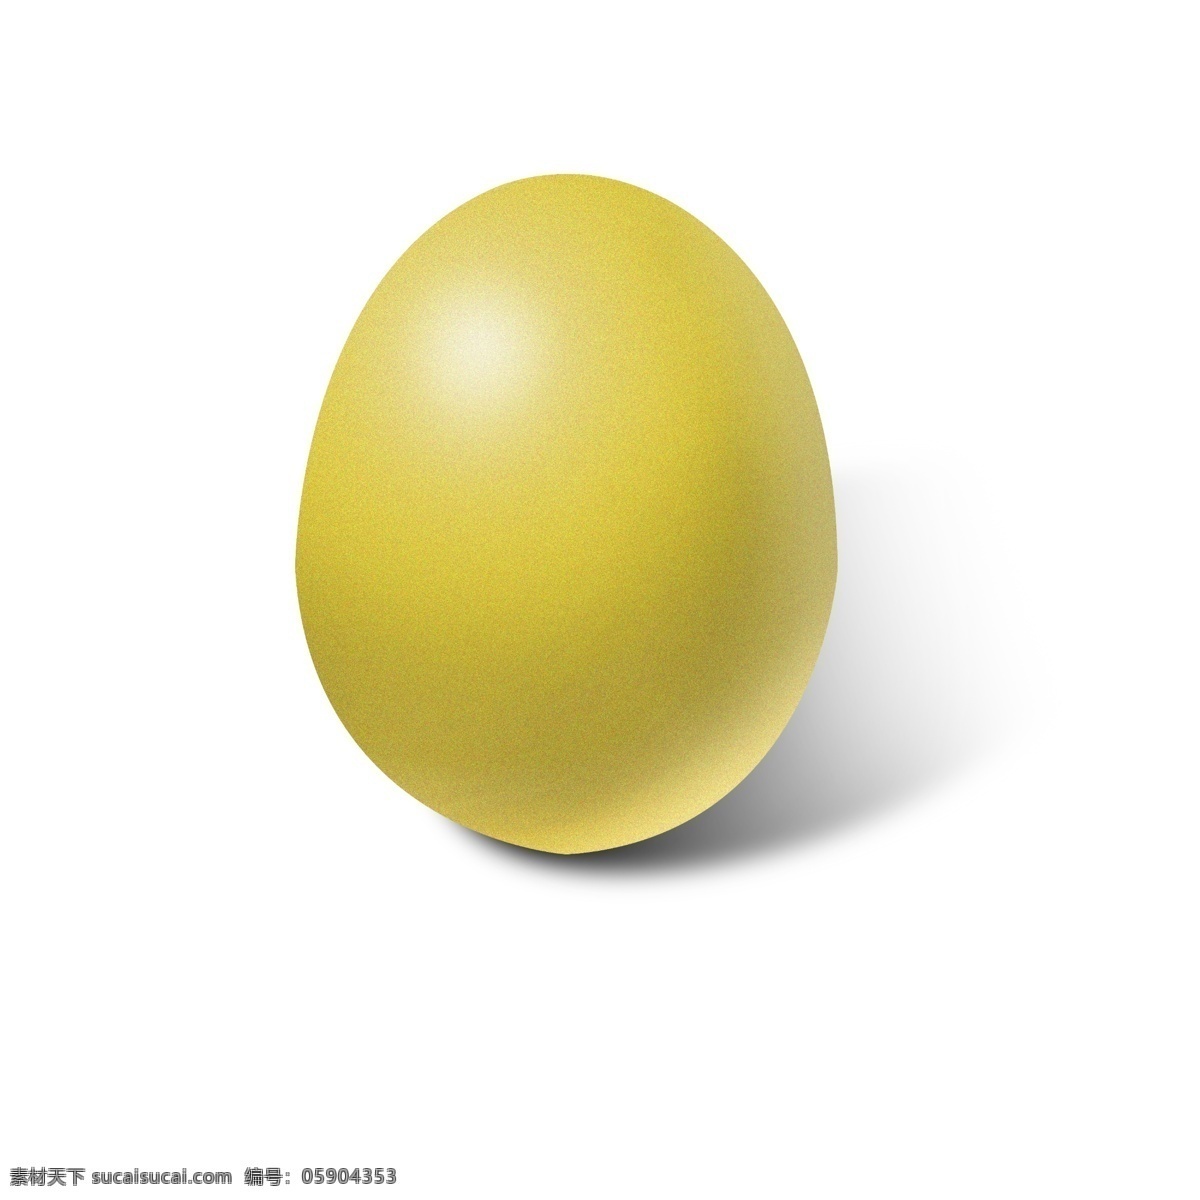 鸡蛋 蛋壳 鸡蛋图片 绿色